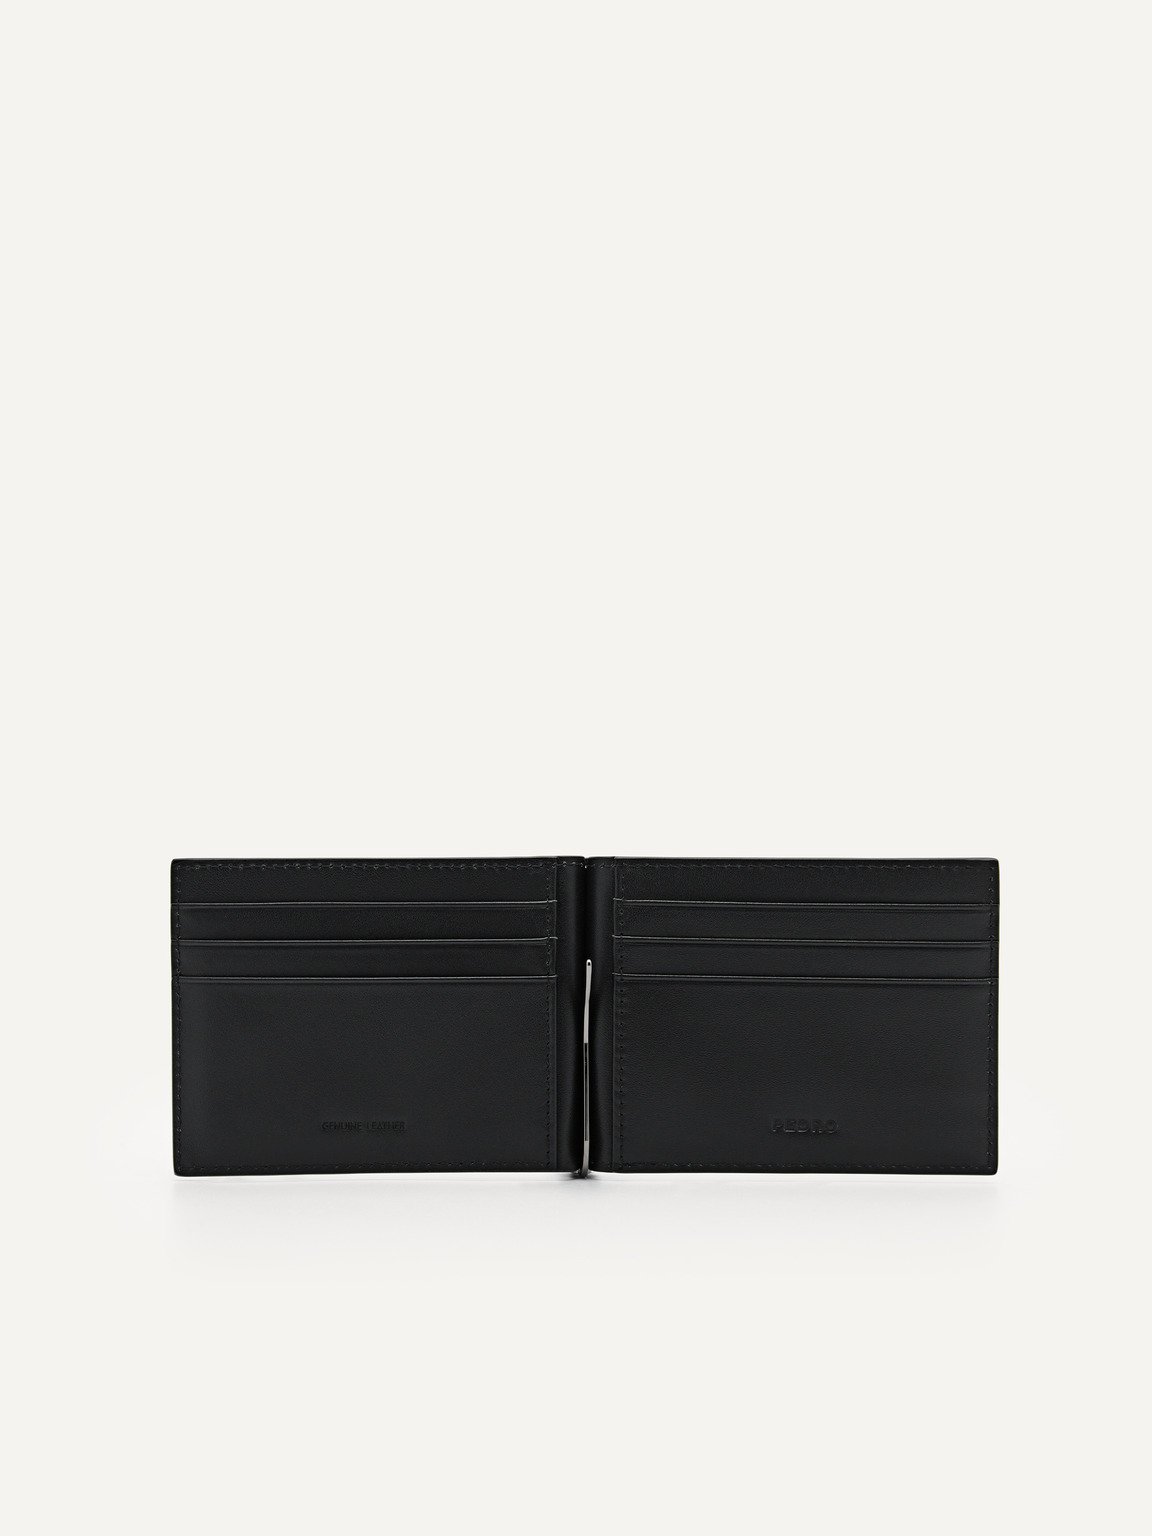 Oliver皮革雙折疊錢夾子卡包, 黑色